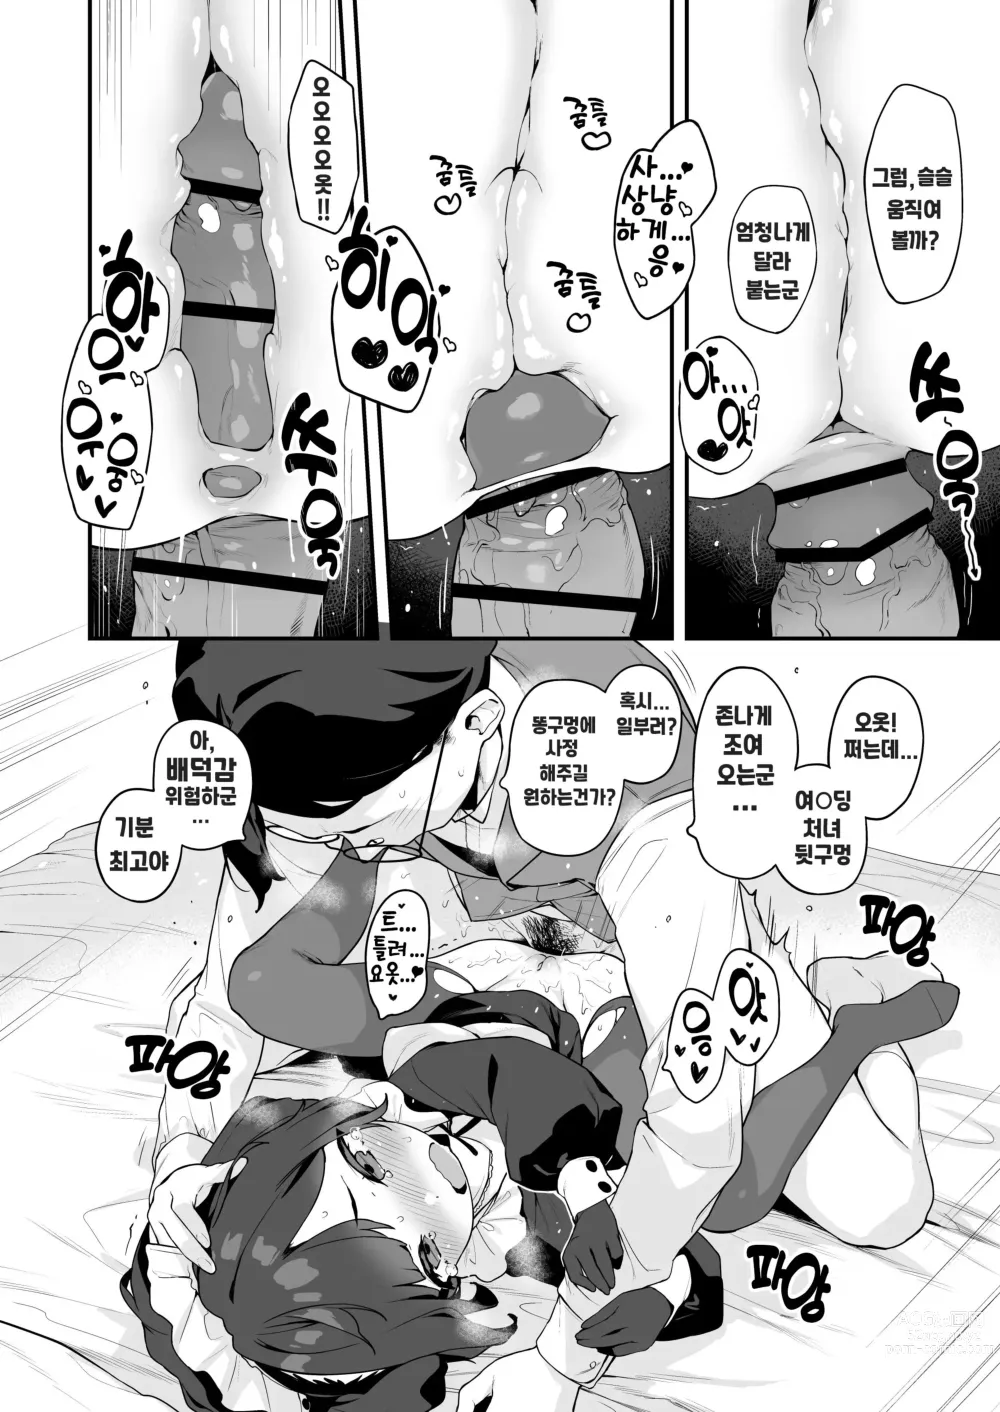 Page 22 of doujinshi Komomo wa Goshujinsama Senyo no Ryoana Nikubenki Loli Maid